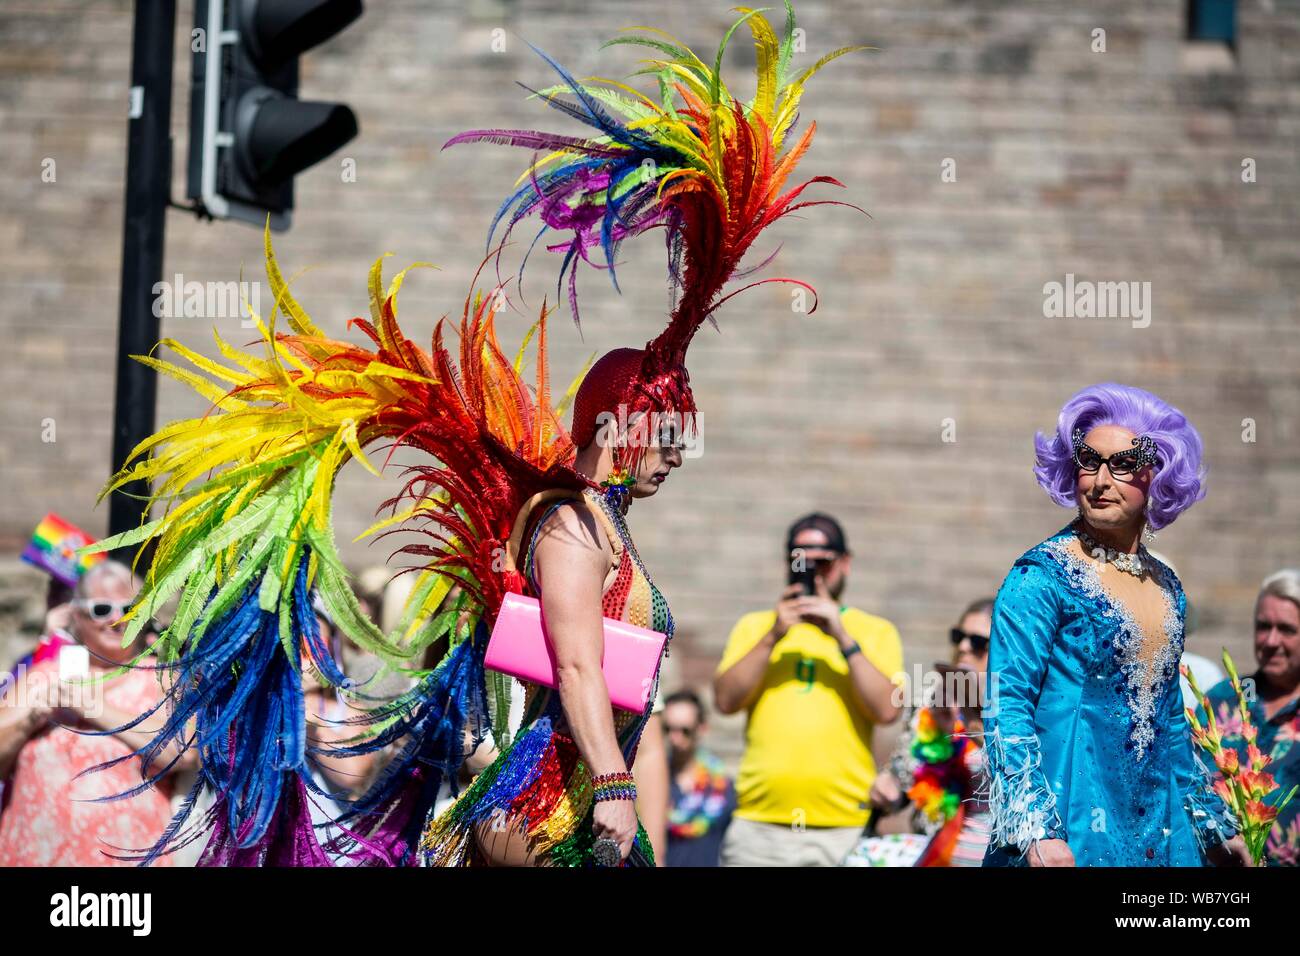 Eine Person in extravaganten Kleid erscheint Downbeat während der Stolz Cymru 2019 Parade in Cardiff. Stockfoto